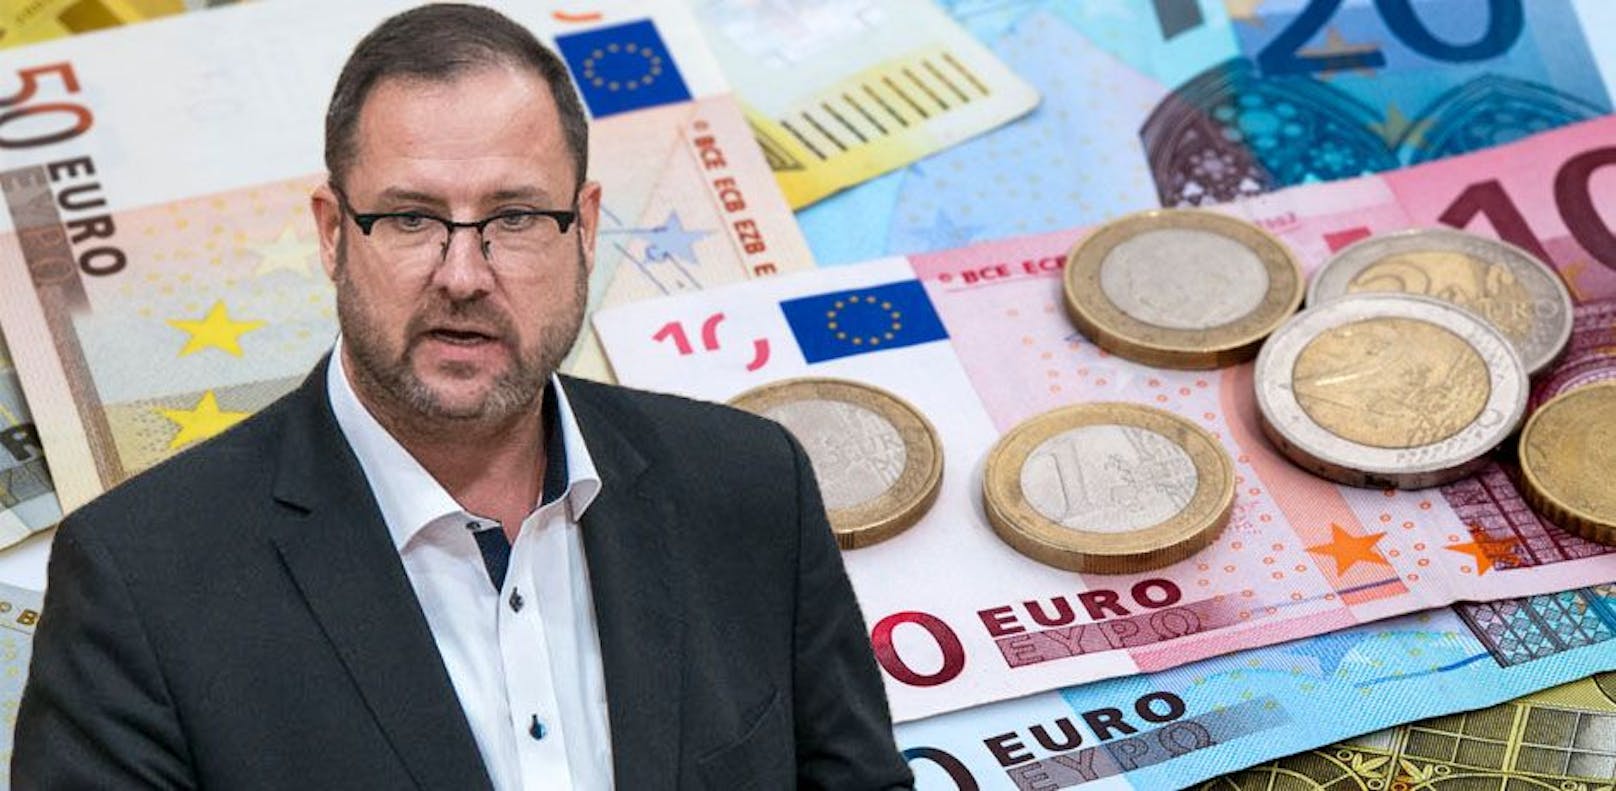 Bargeld-Debatte – FPÖ traut Regierung nicht